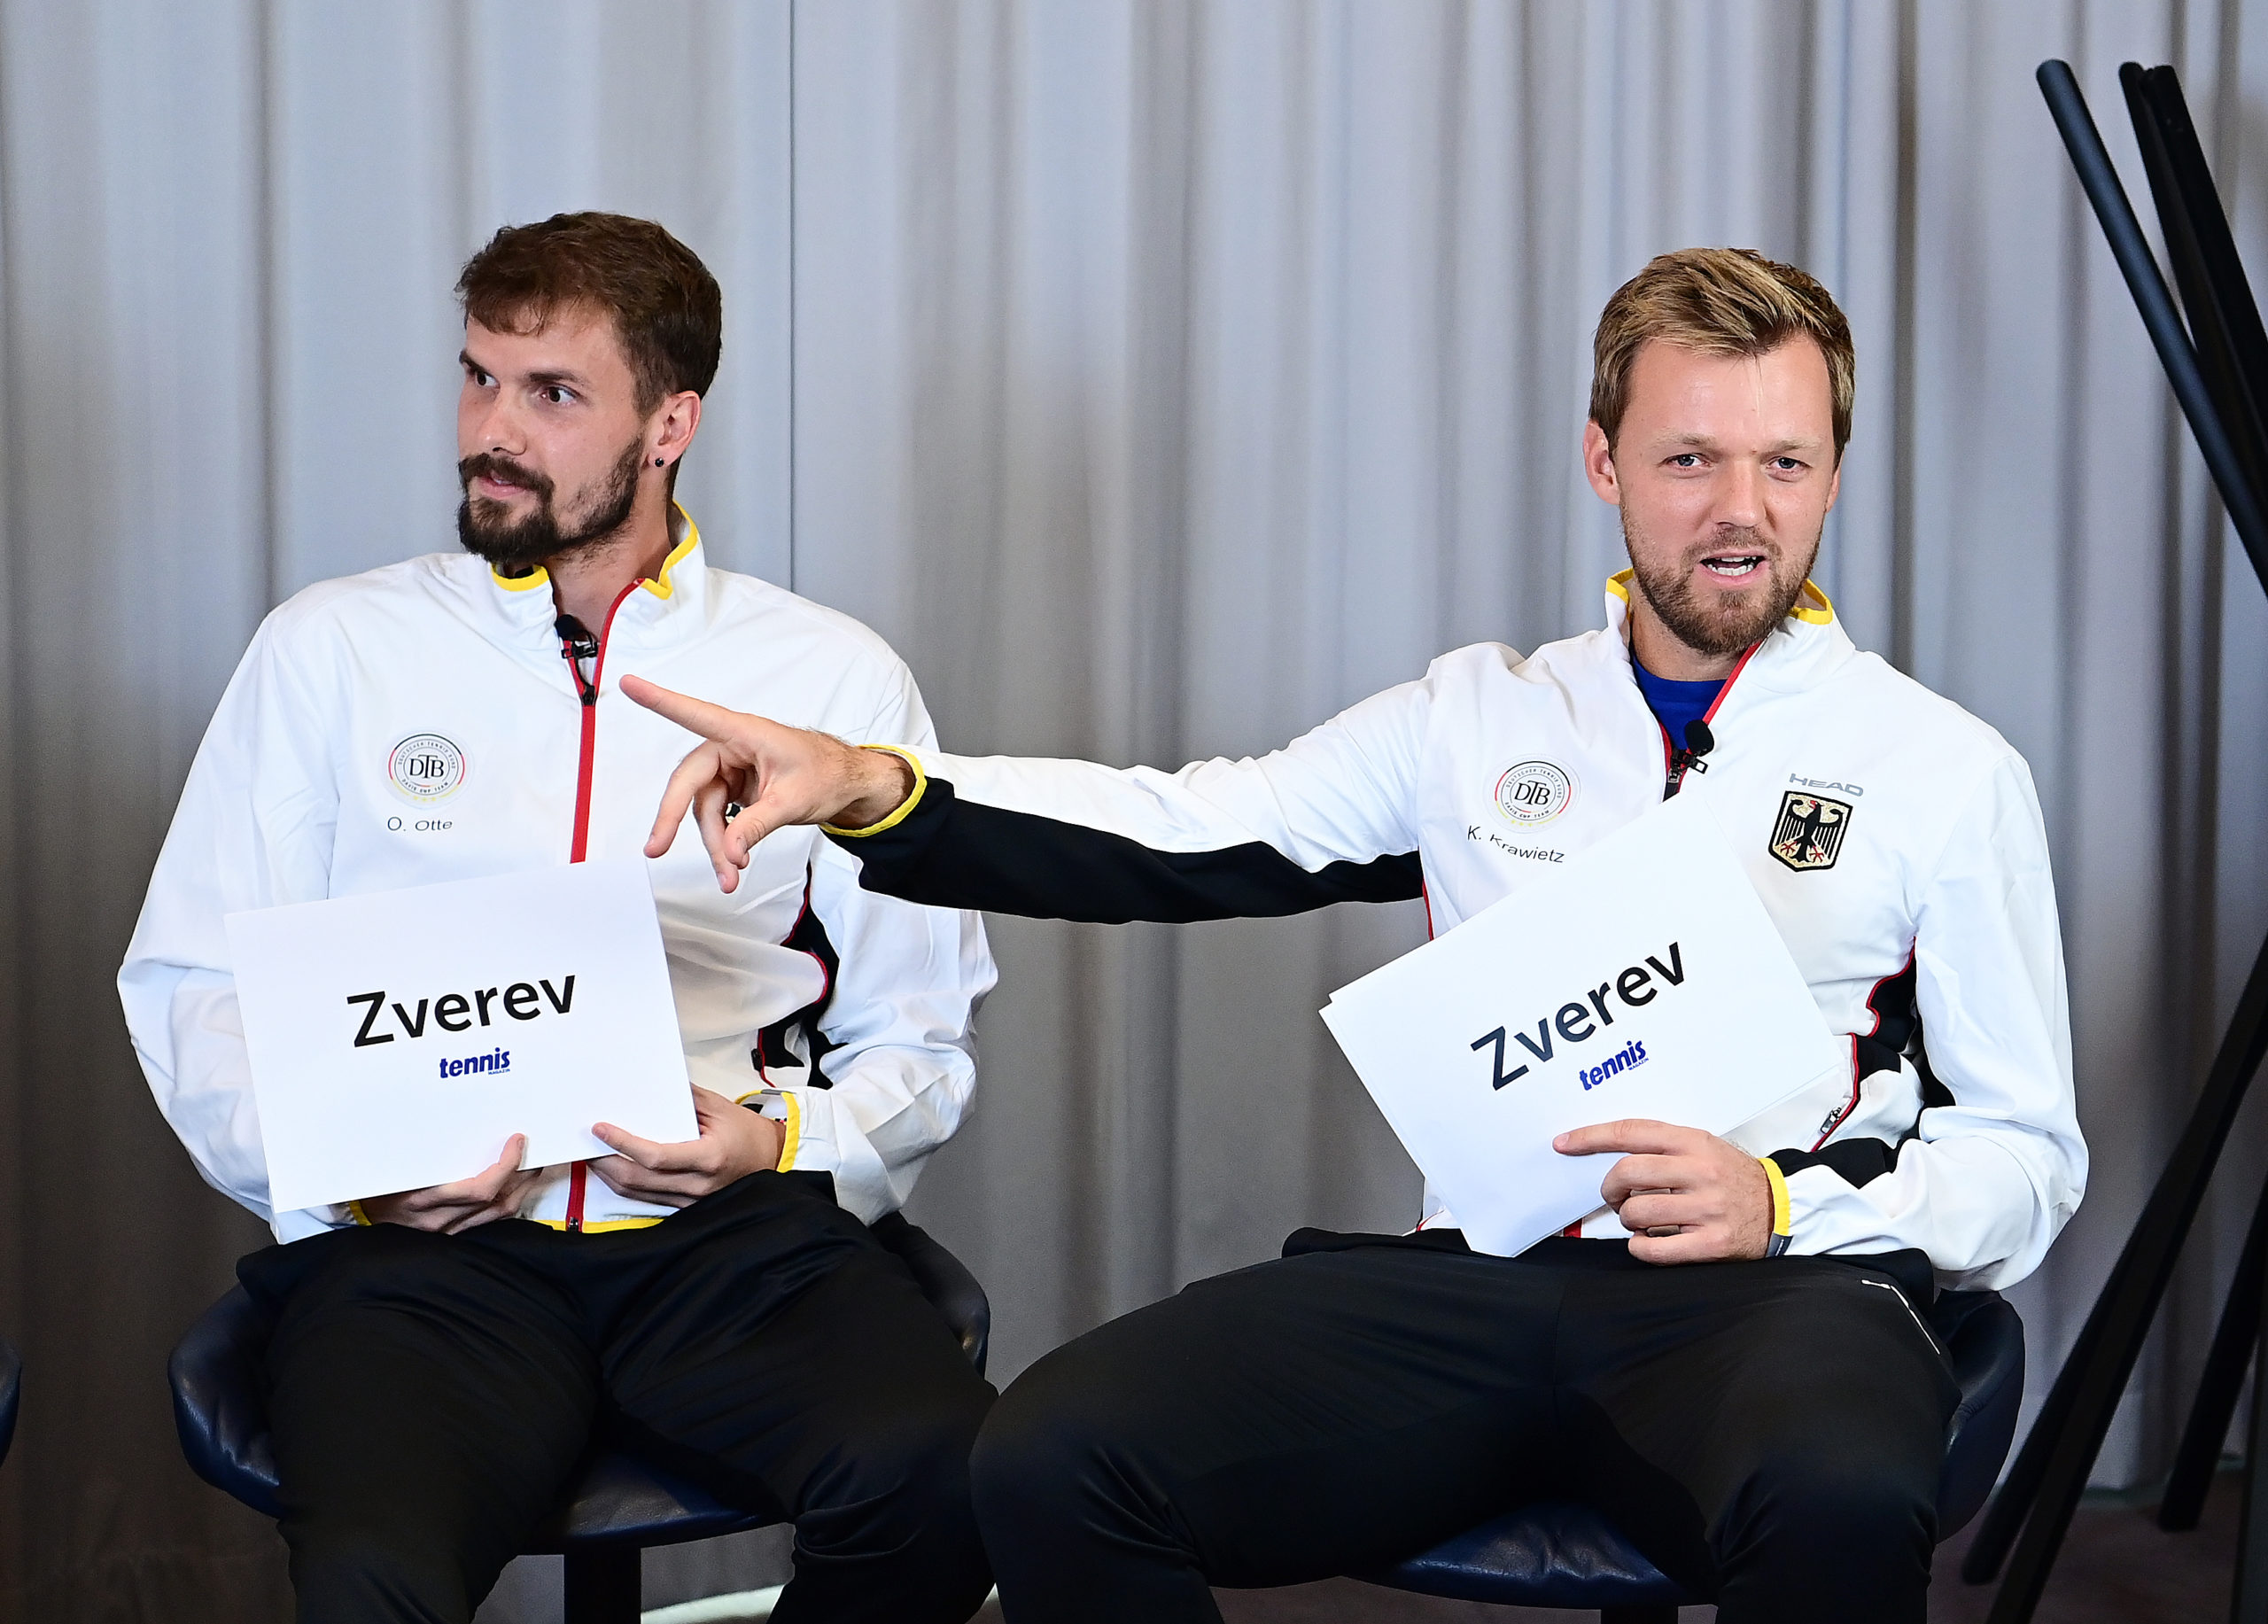 Deutsches Davis Cup-Team, Krawietz, Otte